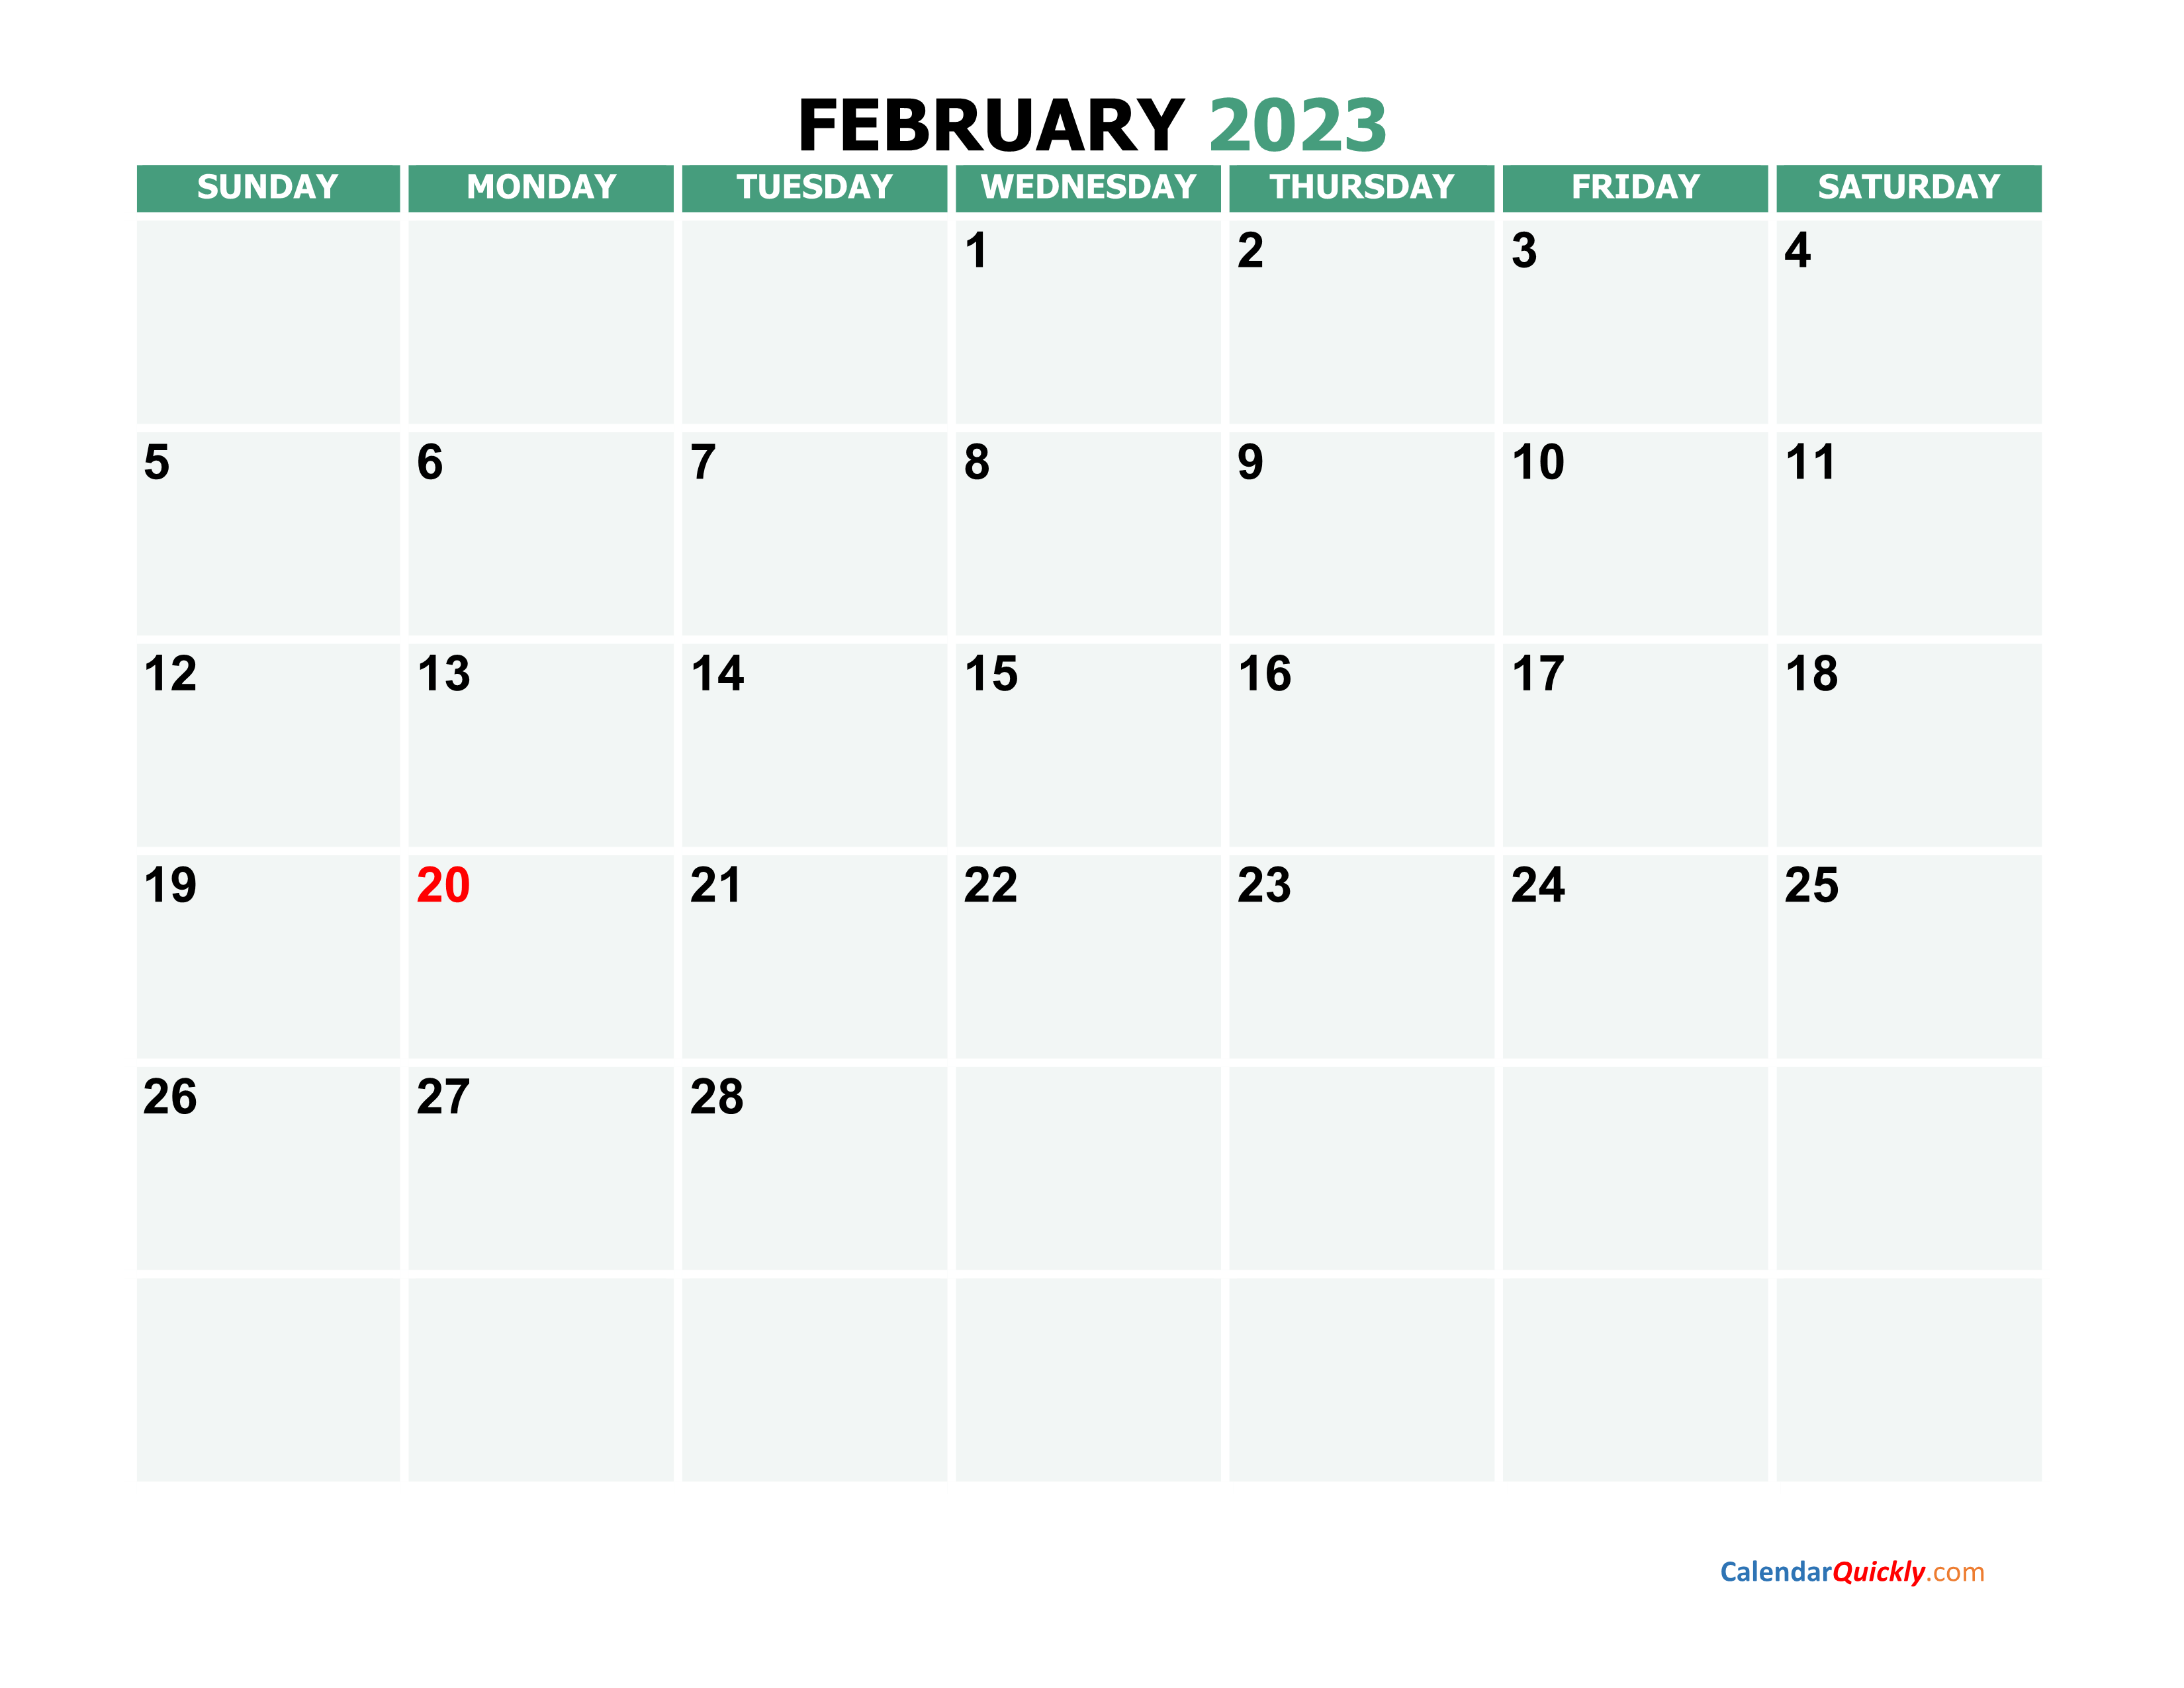 February 2023 Printable Calendar | Calendar Quickly